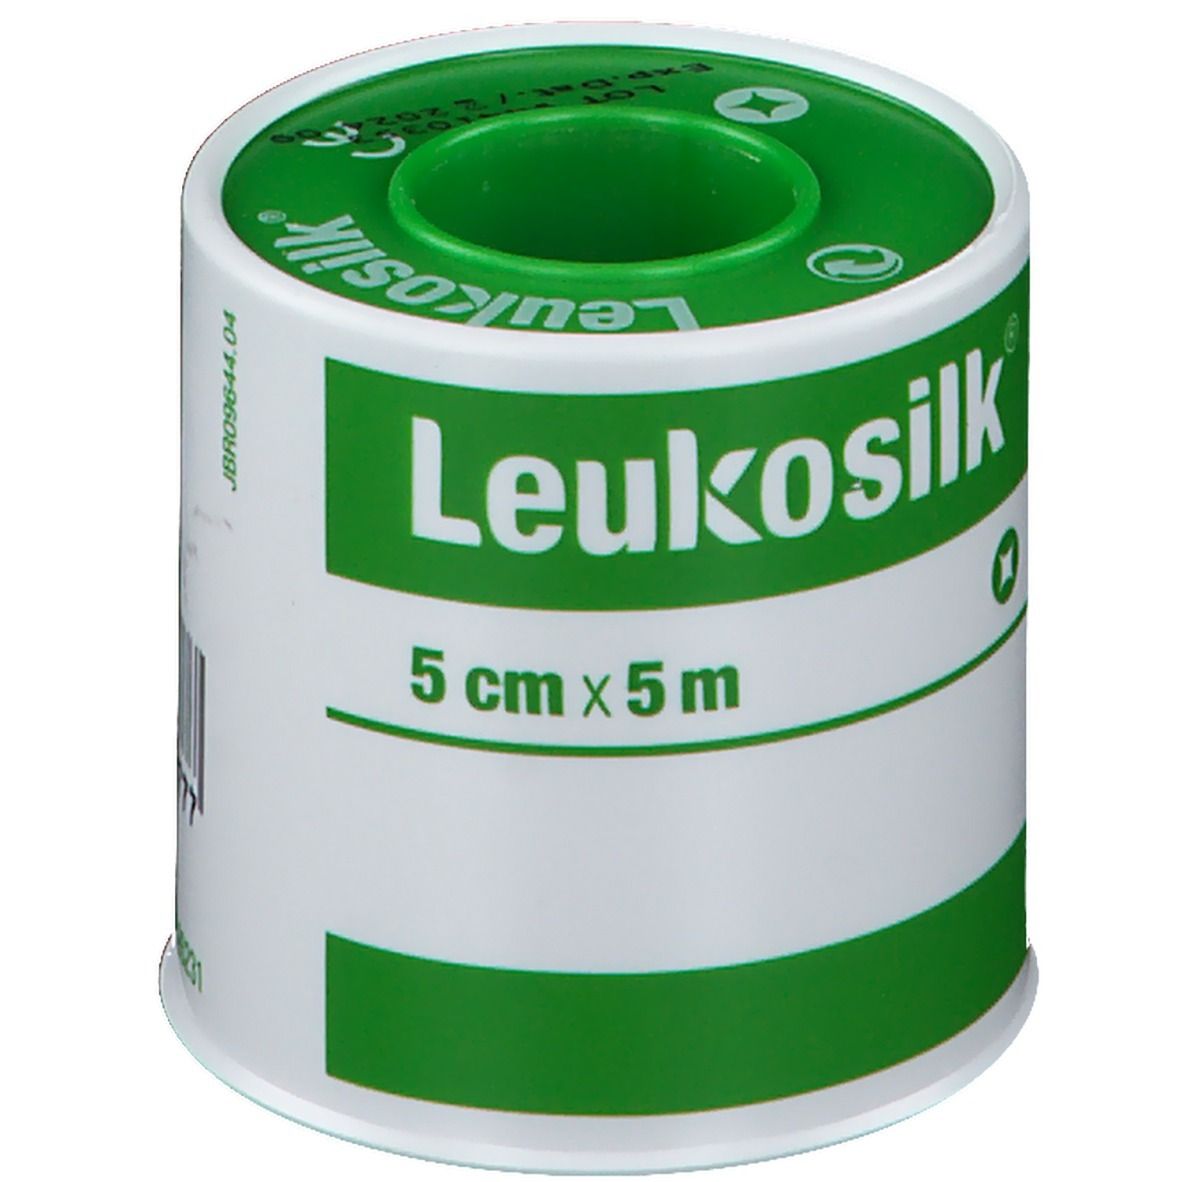 Leukosilk® 5 cm x 5 m 1 St - SHOP APOTHEKE